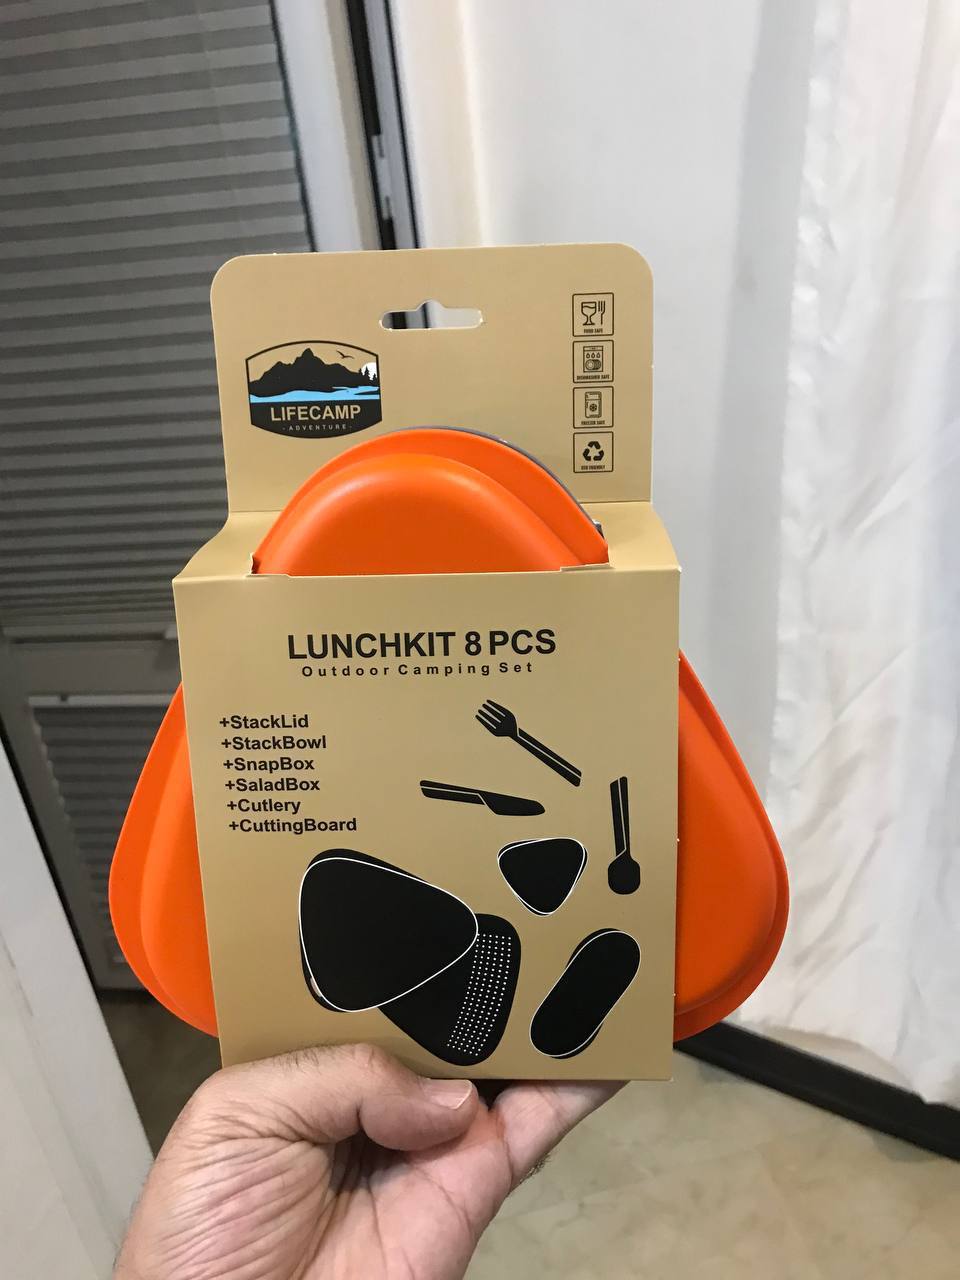 ست ظروف 8 تکه لایف کمپ (لانچ کیت مثلثی) LunchKit Lifecamp